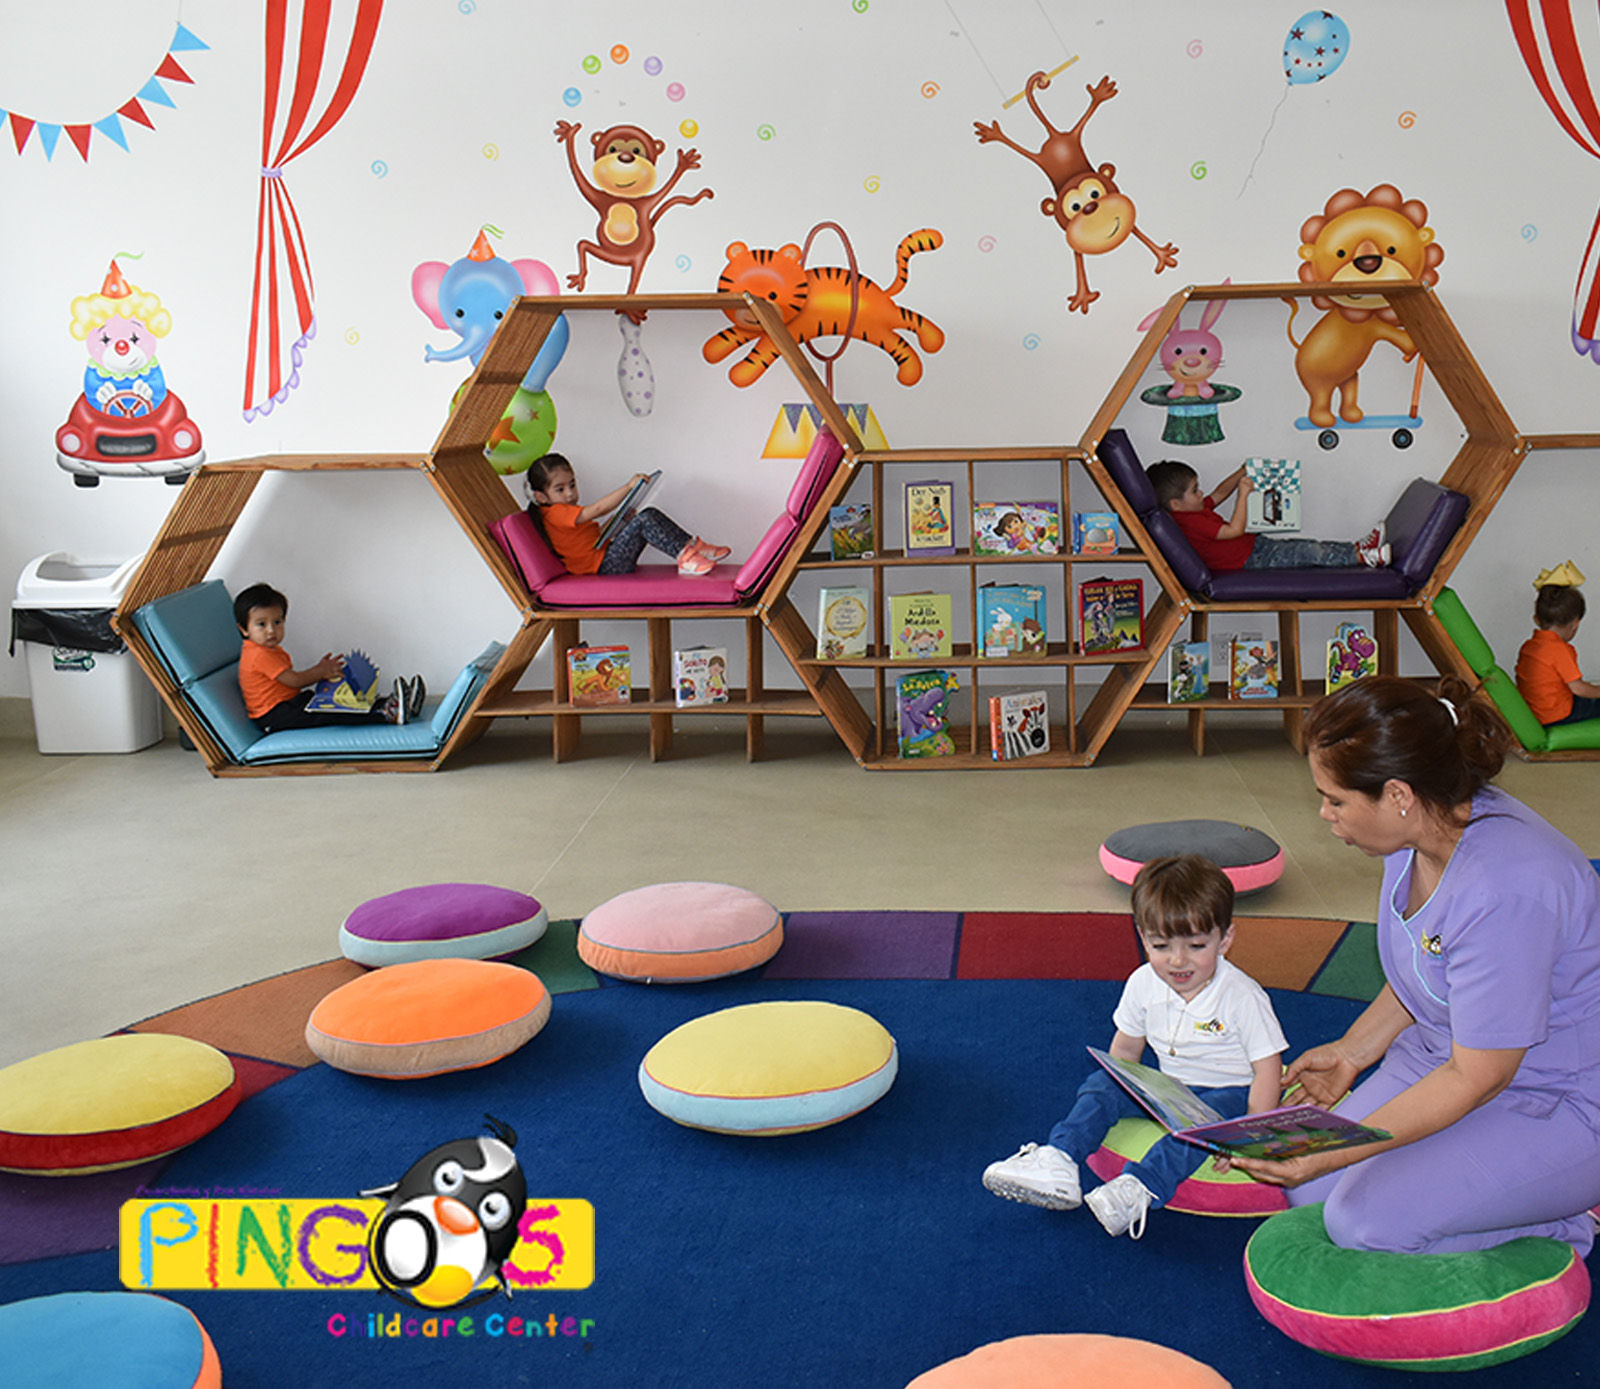 Pingos Childcare Center